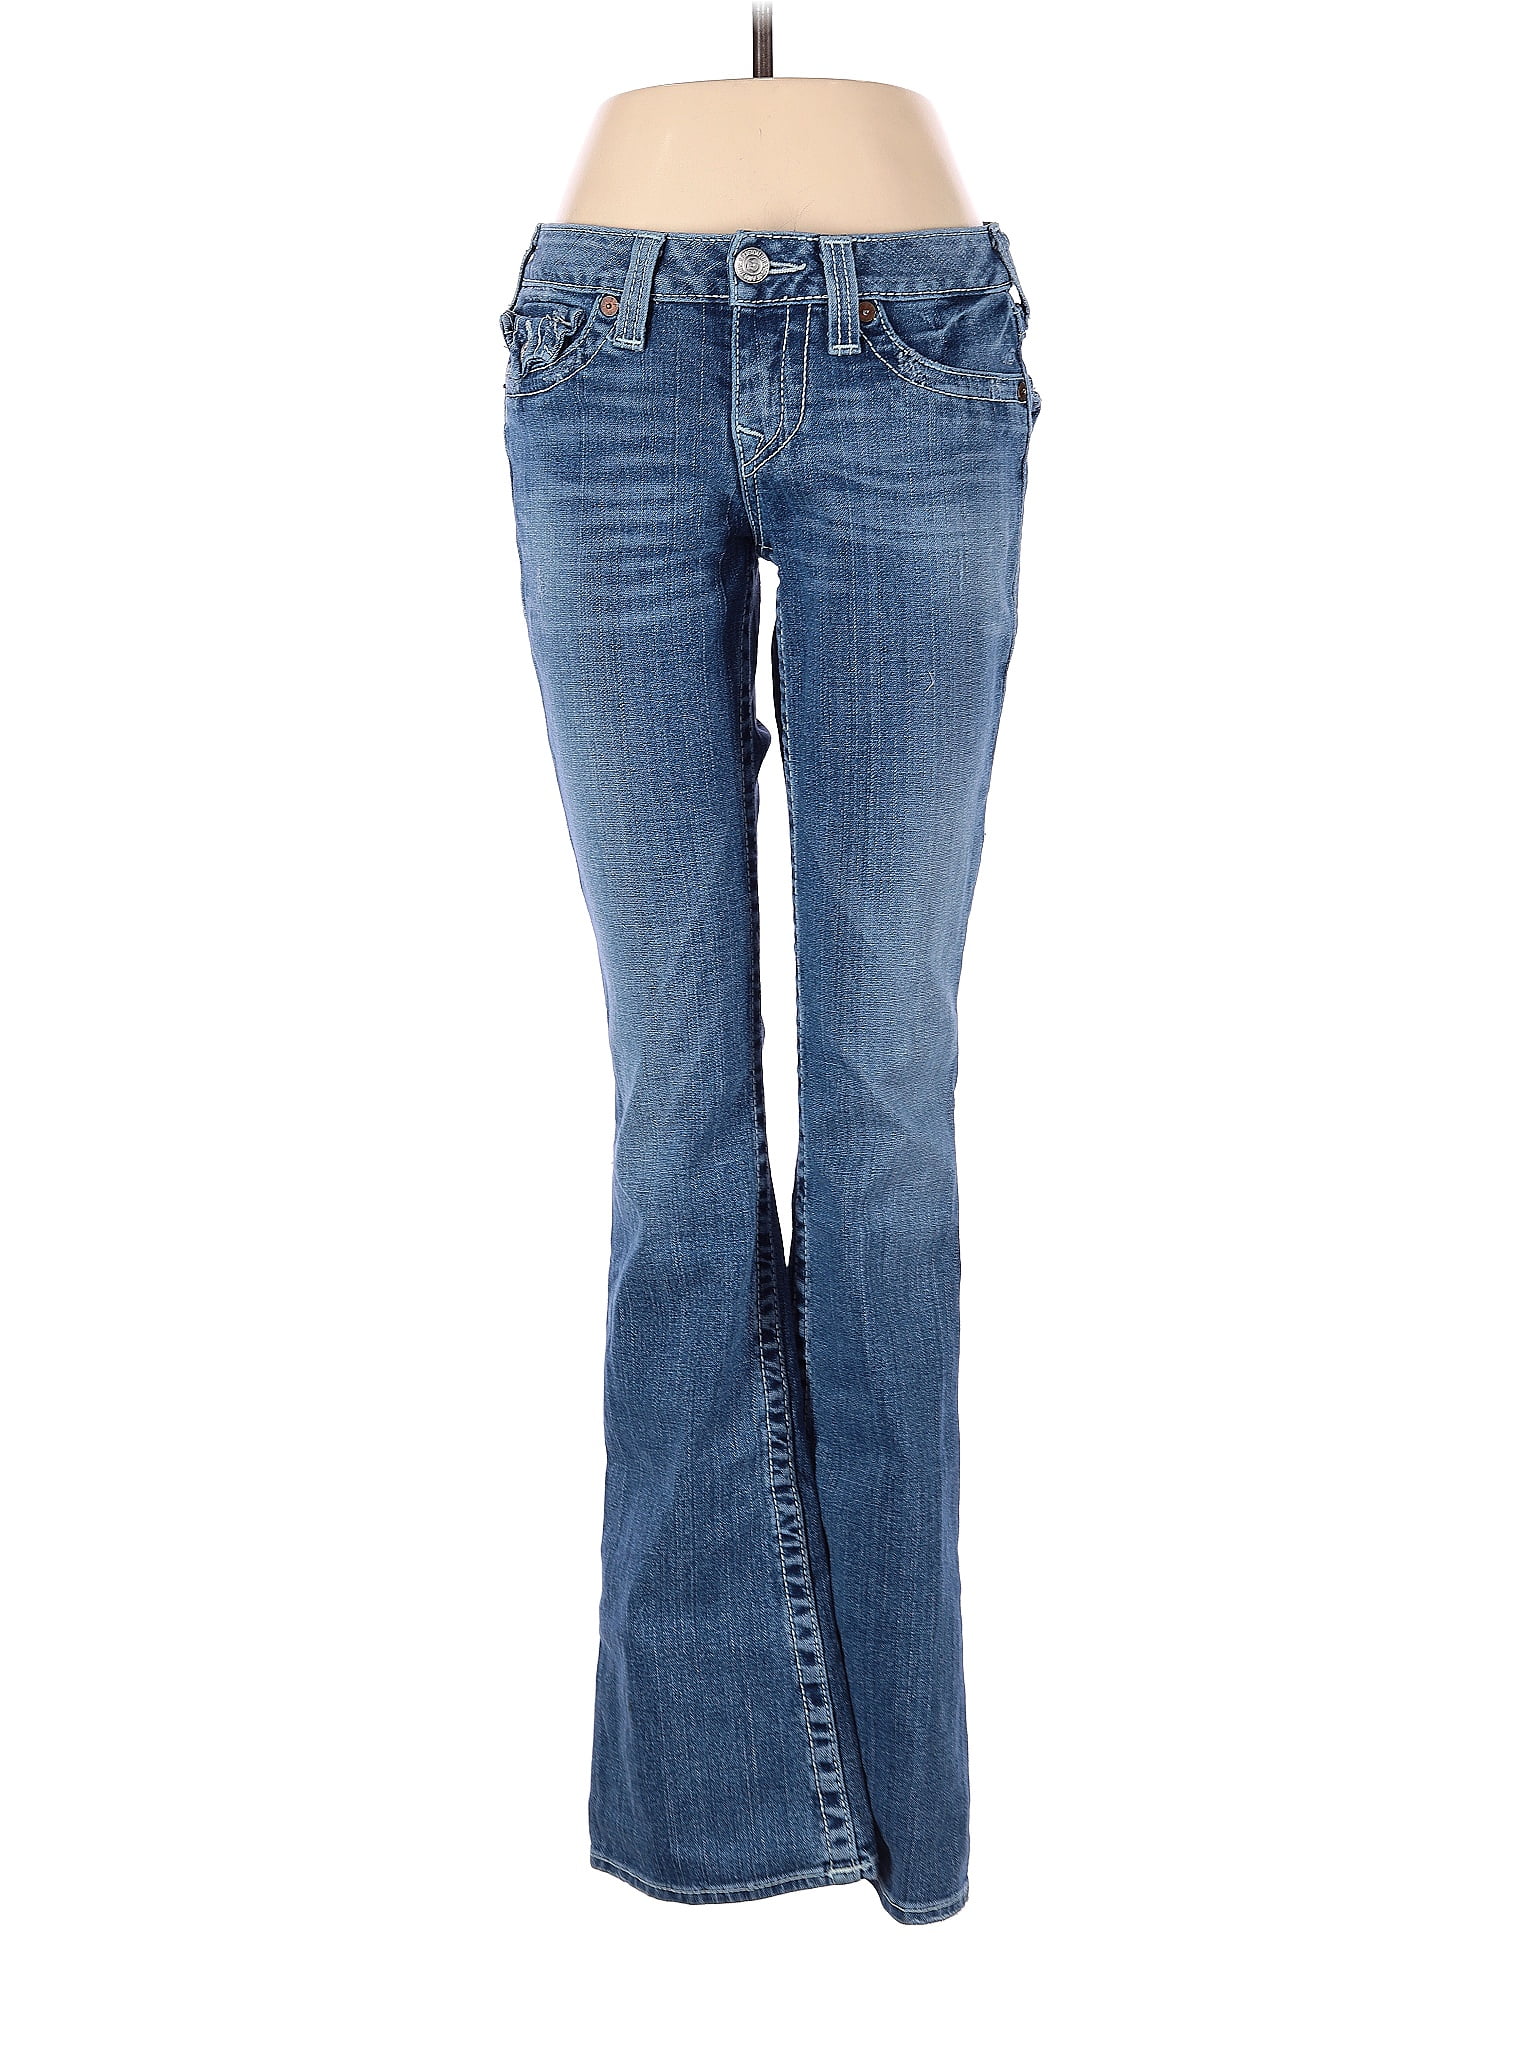 True Religion Solid Blue Jeans 28 Waist - 74% off | thredUP